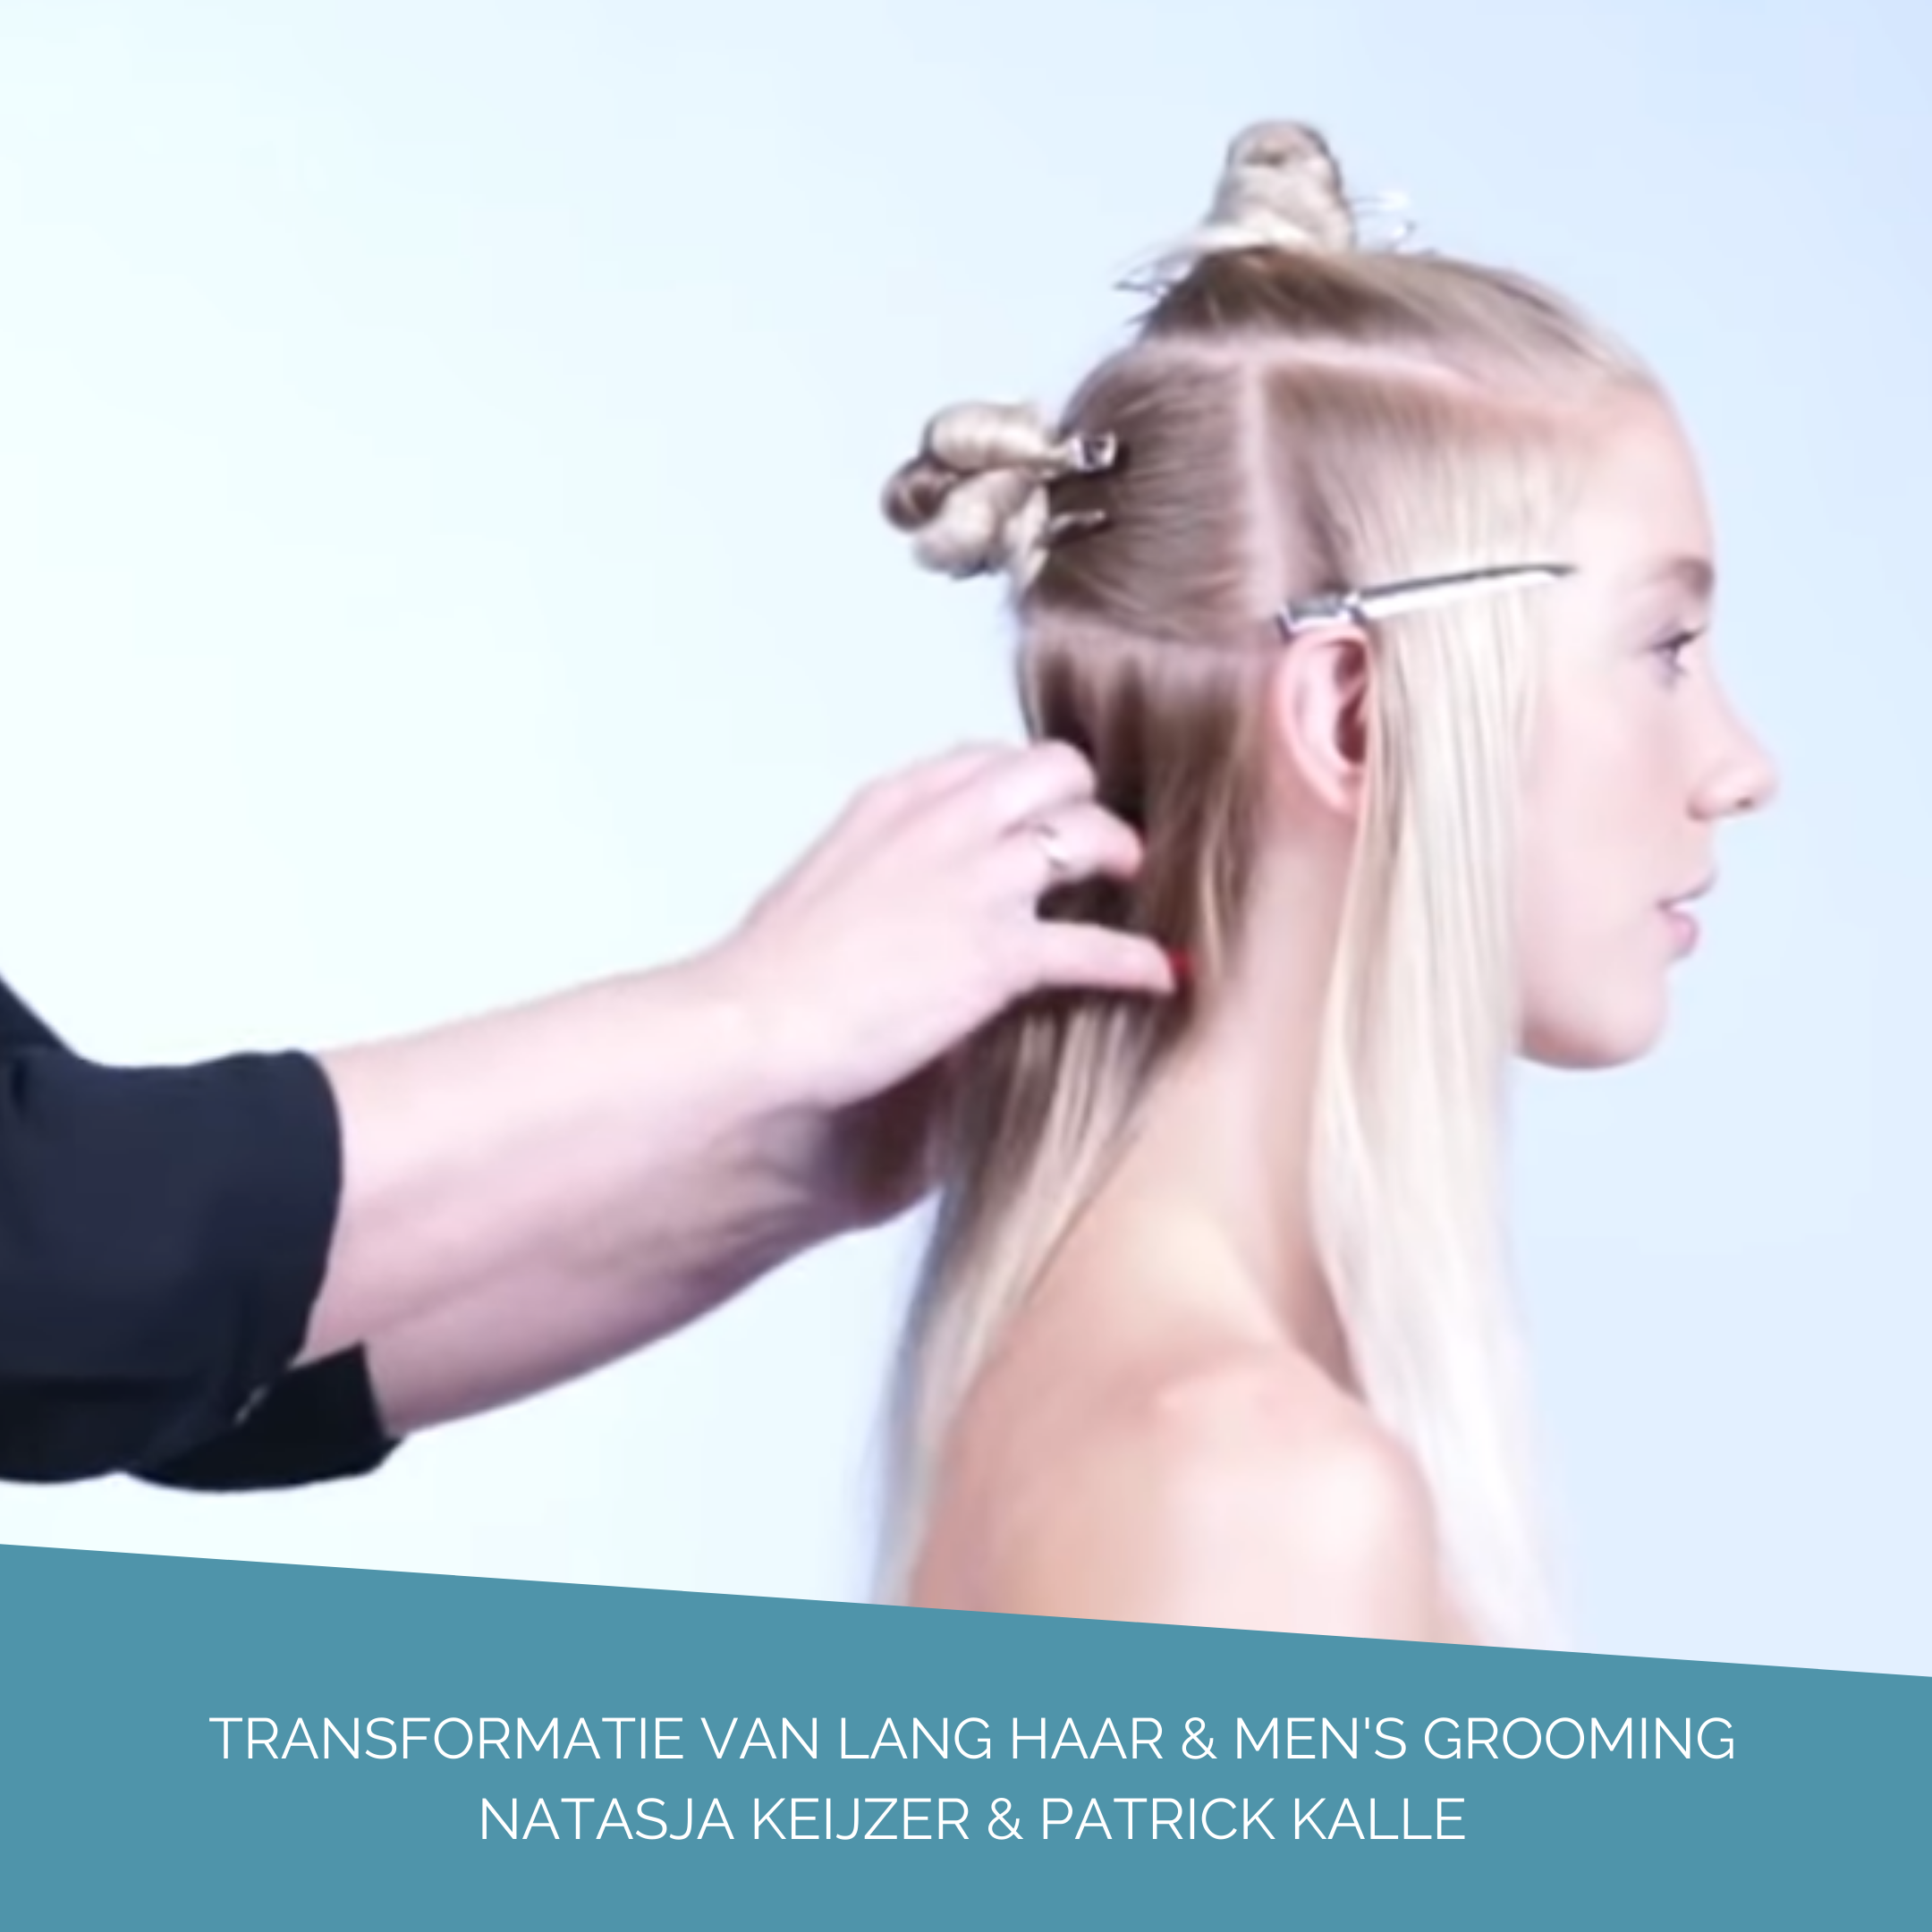 Video 'Transformatie van lang haar & men's grooming'